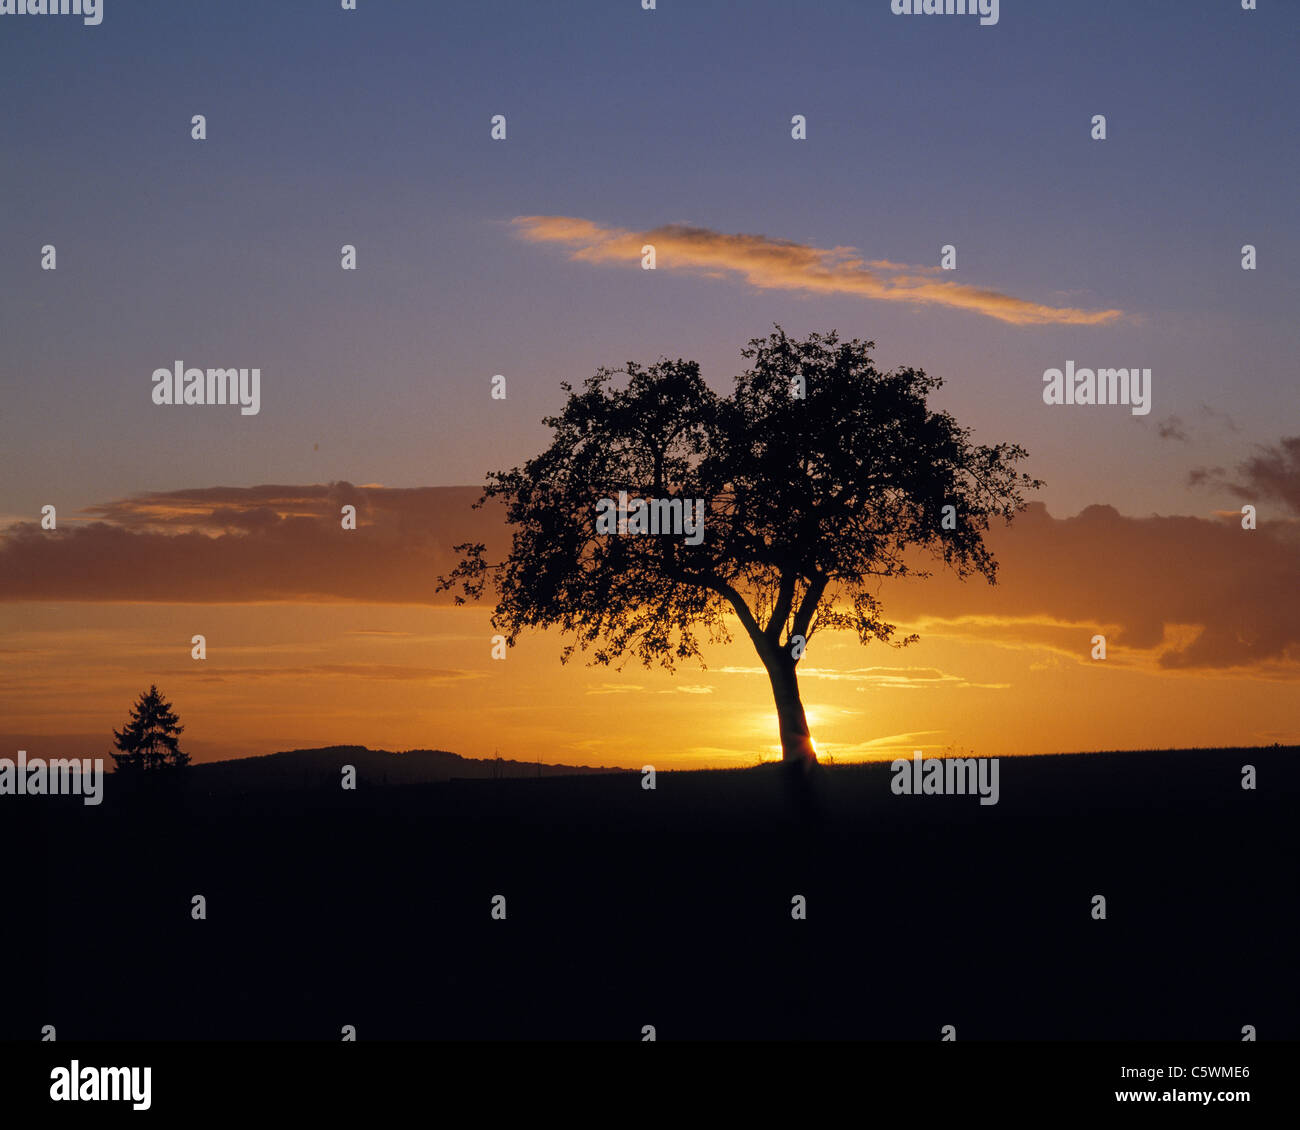 Natur, freistehender Laubbaum im Sonnenuntergang, Abendrot und Wolkenhimmel, Deutschland Banque D'Images